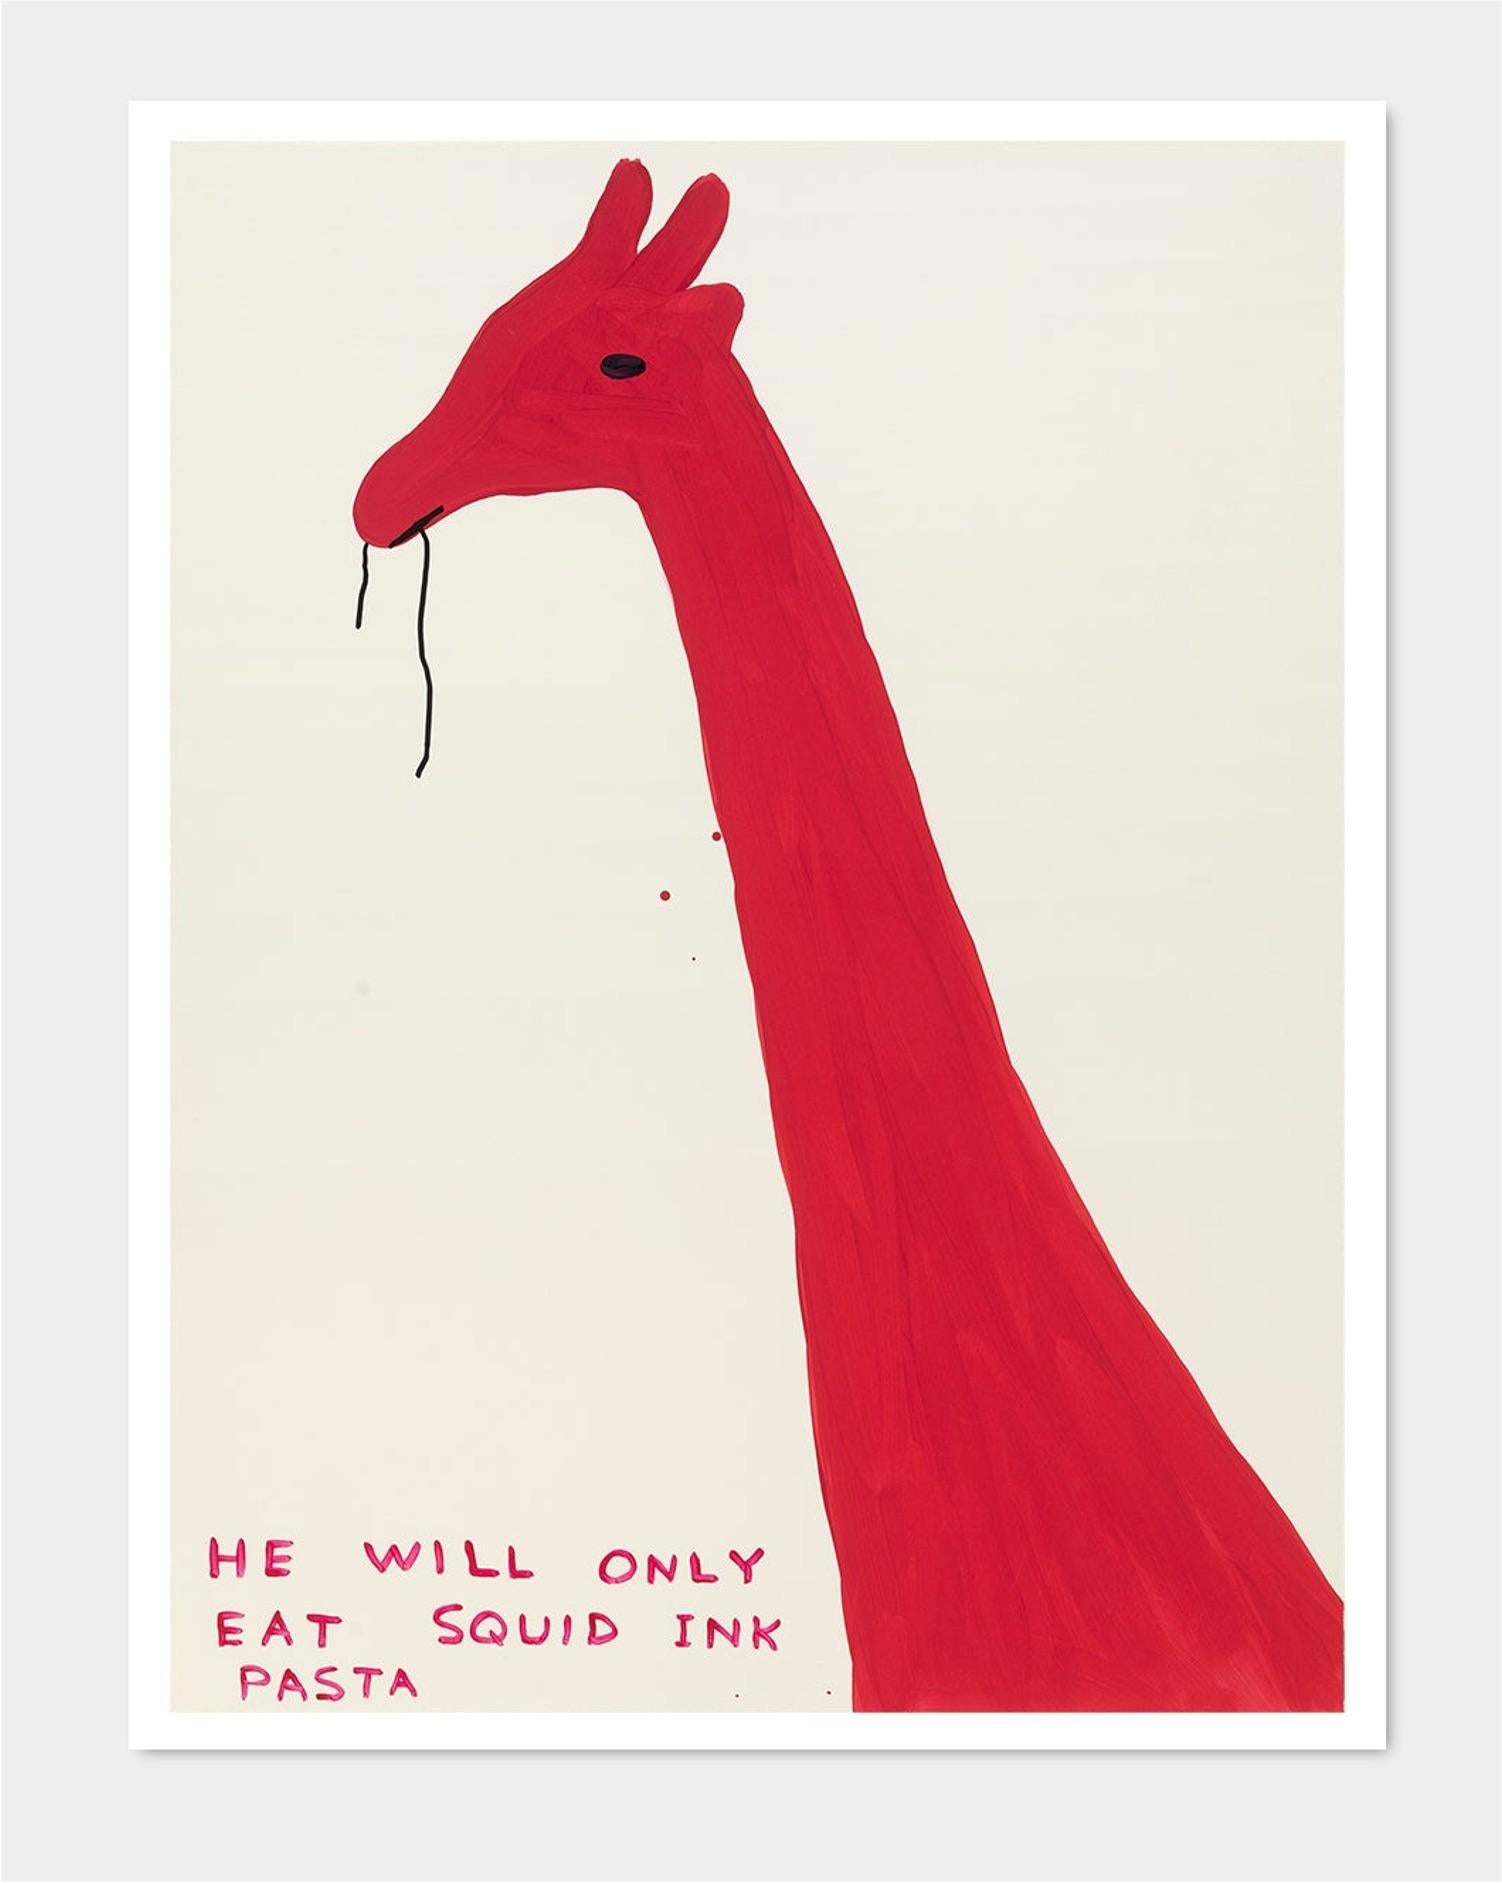 David Shrigley
Ohne Titel (Er isst nur Nudeln mit Tintenfischtinte) (2019)
80 x 60 cm
Offset-Lithographie
Gedruckt auf 200g Munken Lynx Papier